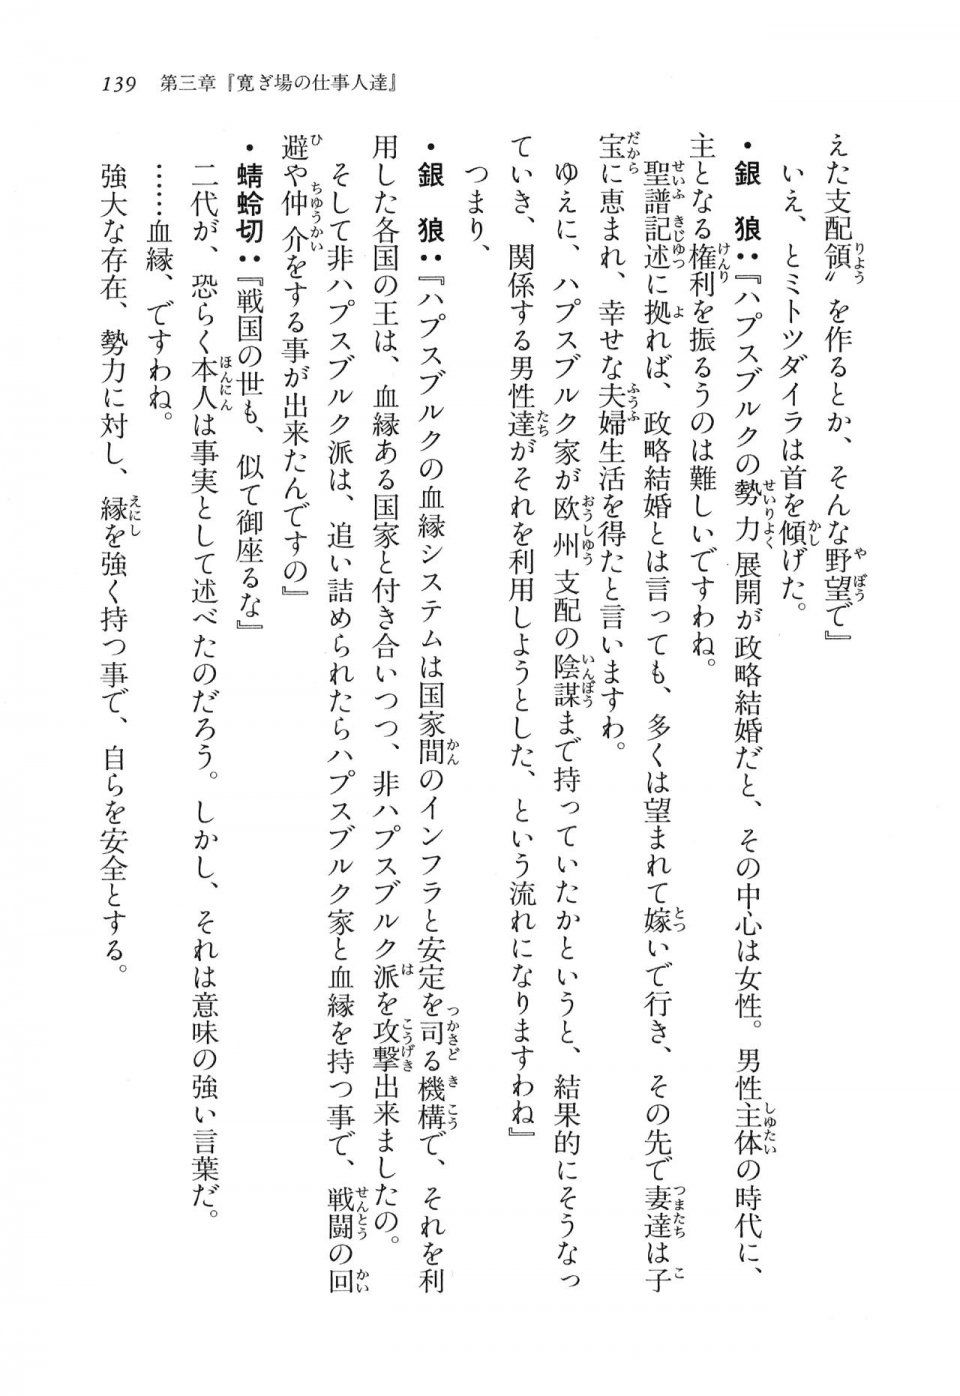 Kyoukai Senjou no Horizon LN Vol 16(7A) - Photo #139